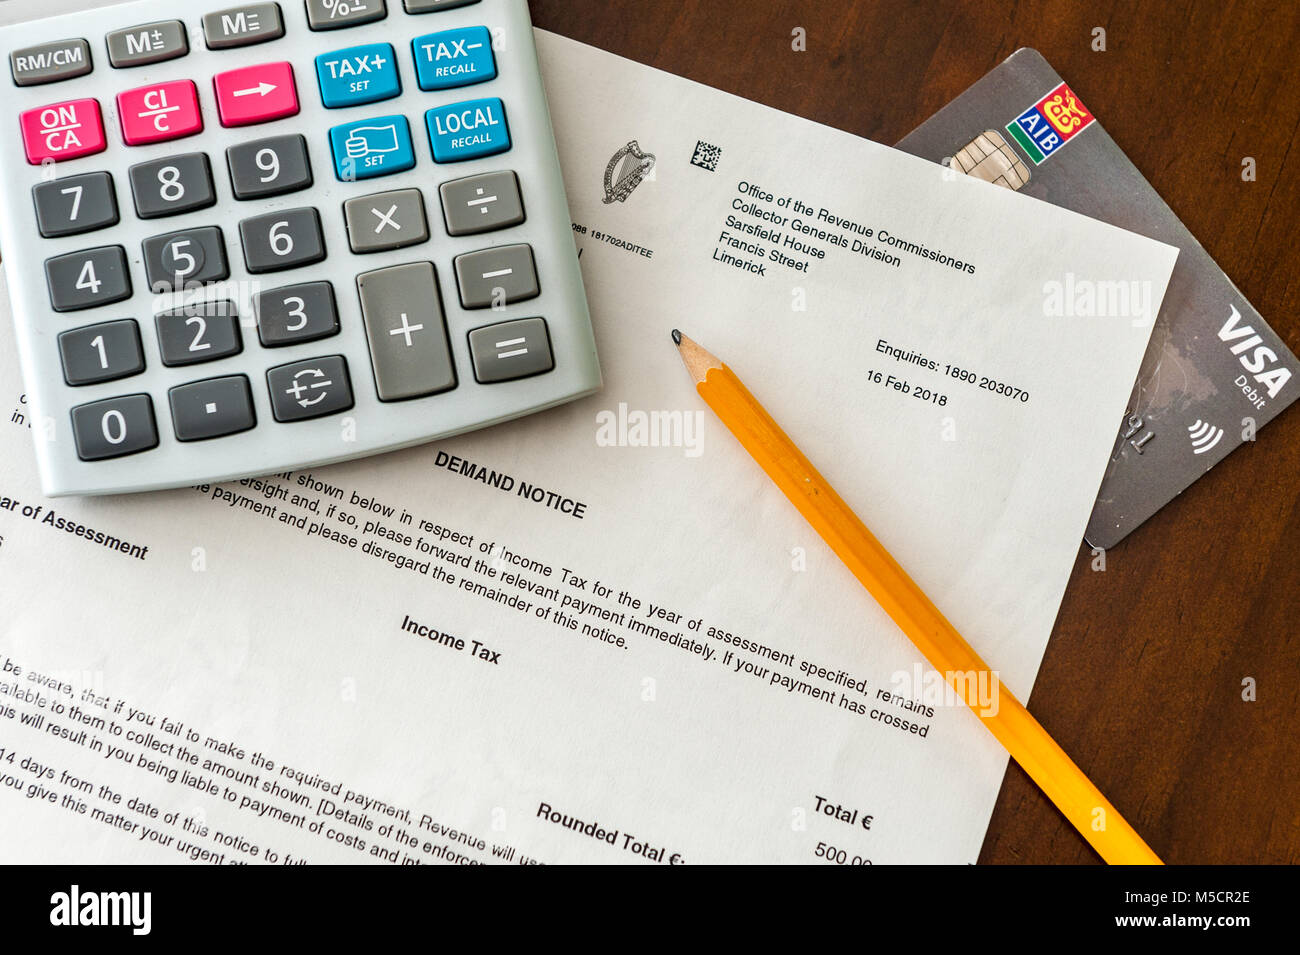 Carta de demanda de impuestos de €500 a partir de los ingresos irlandesa con una calculadora, lápiz y domiciliación bancaria/tarjeta visa. Foto de stock